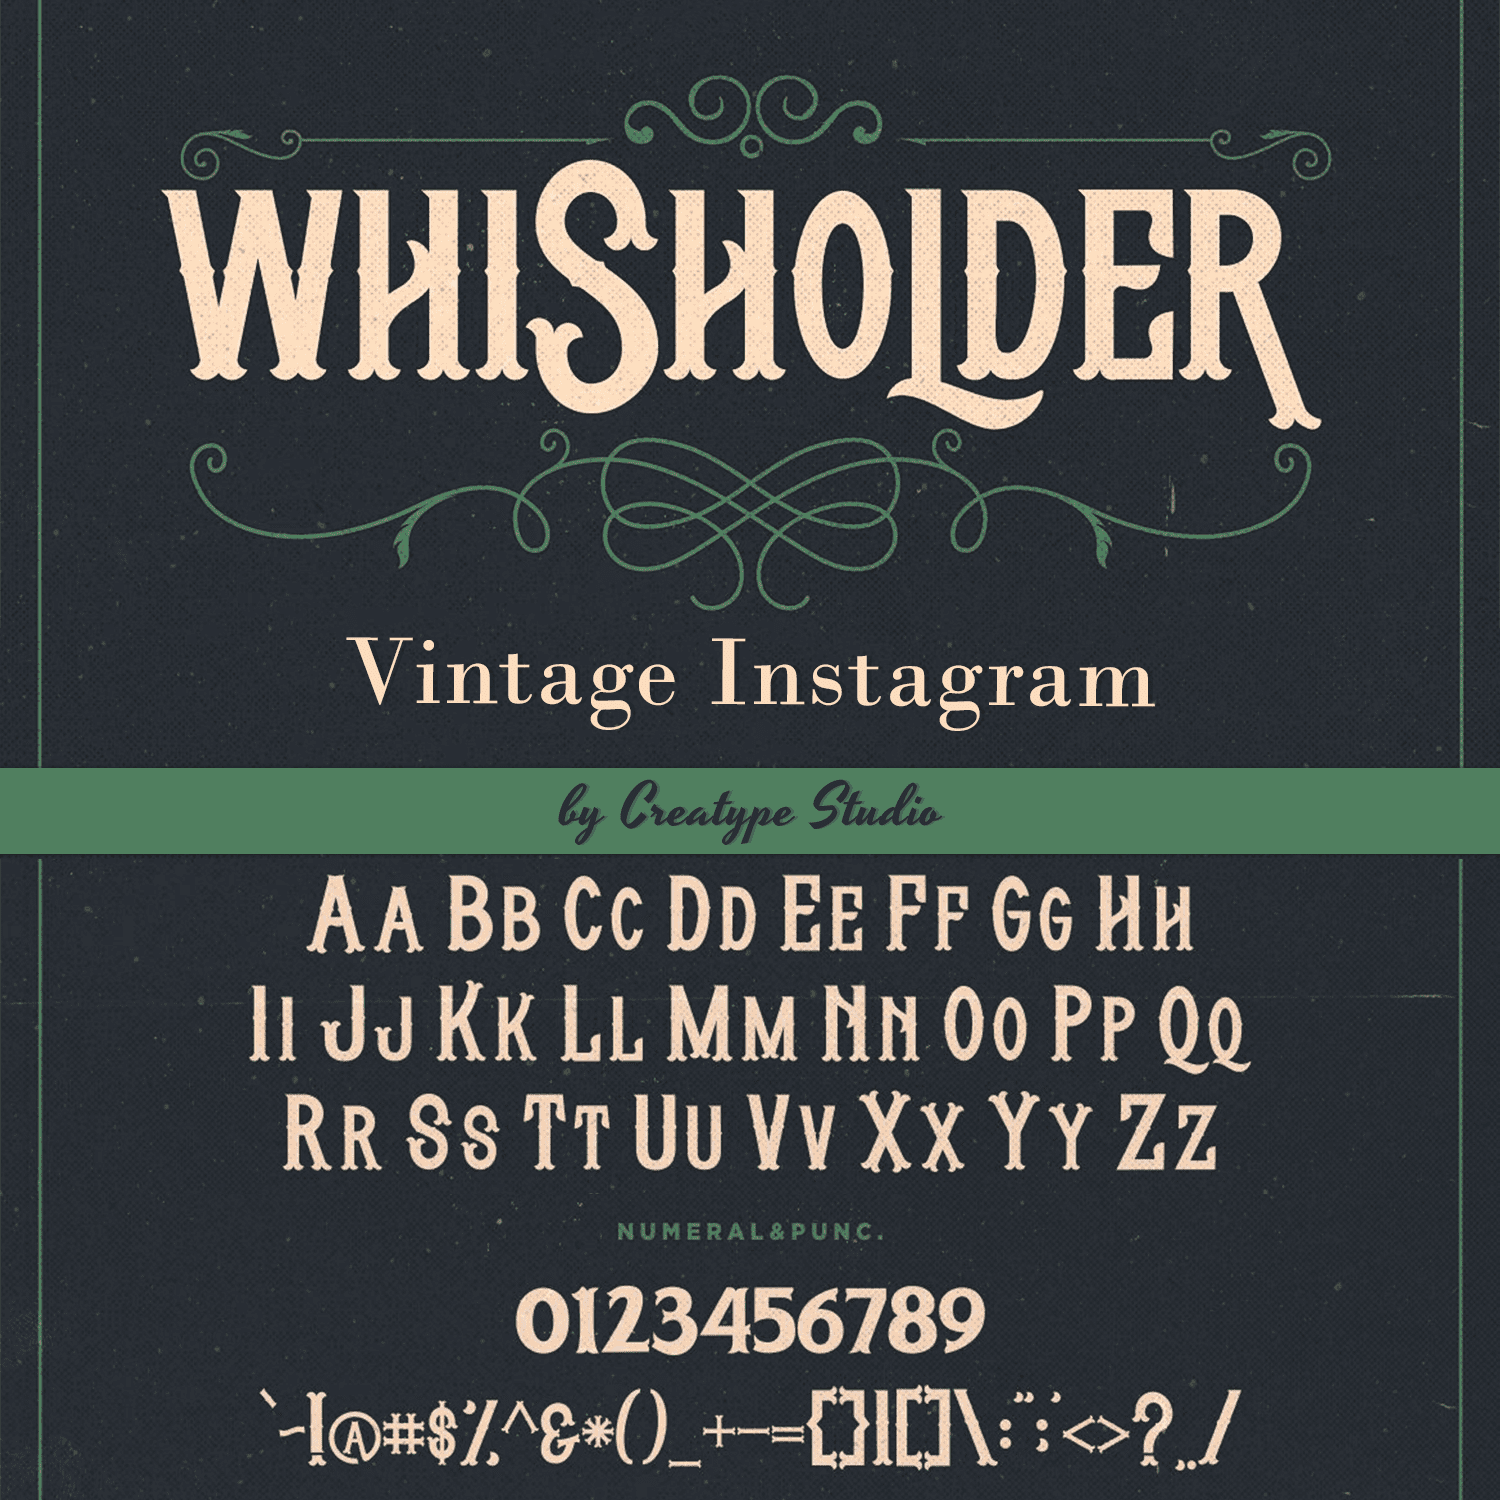 Whisholder Vintage Instagram.